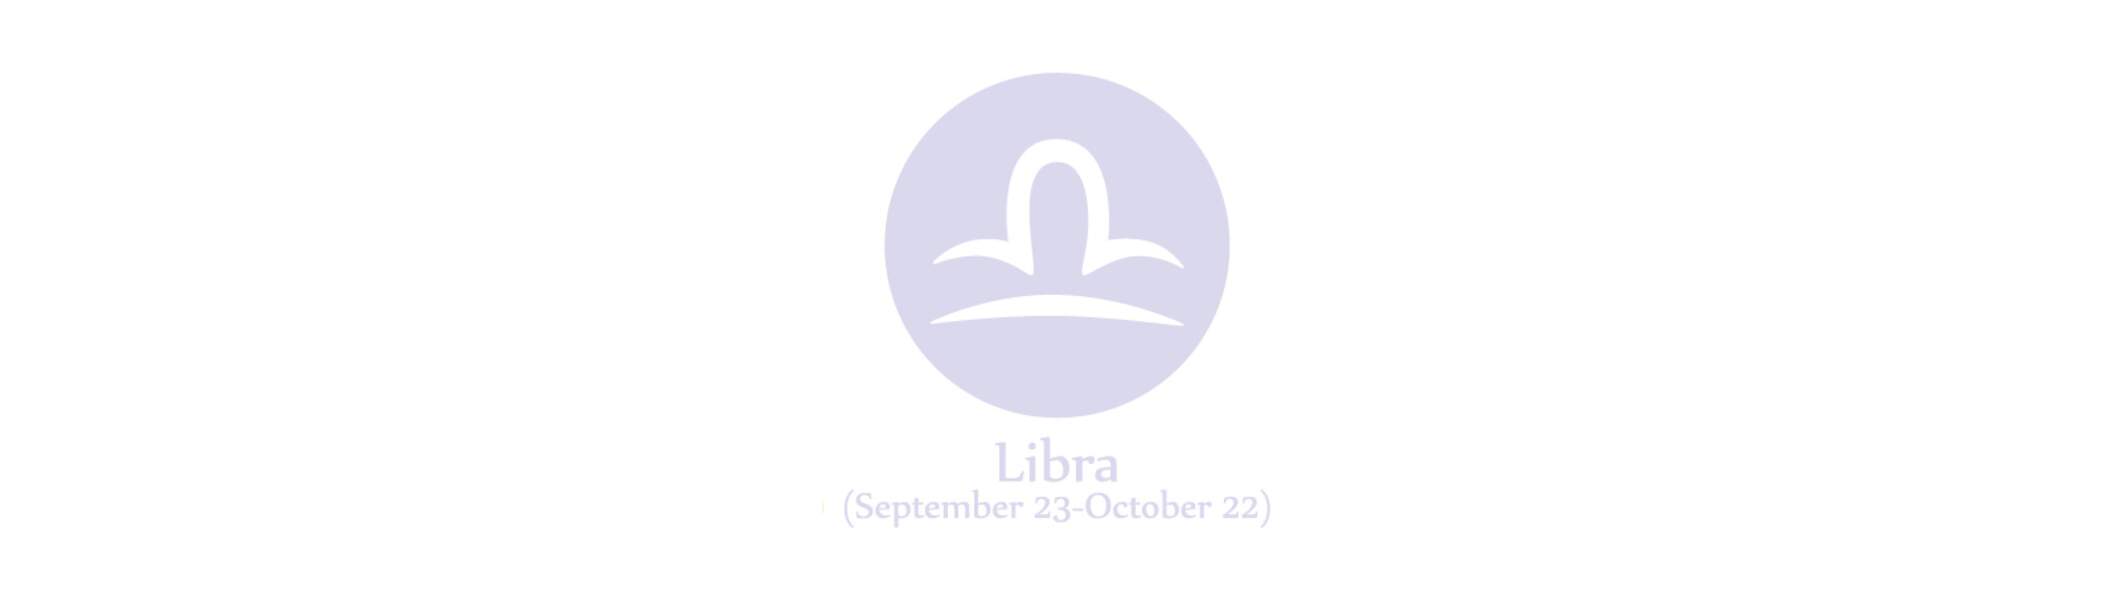 Horoscope de la semaine prochaine pour la Balance